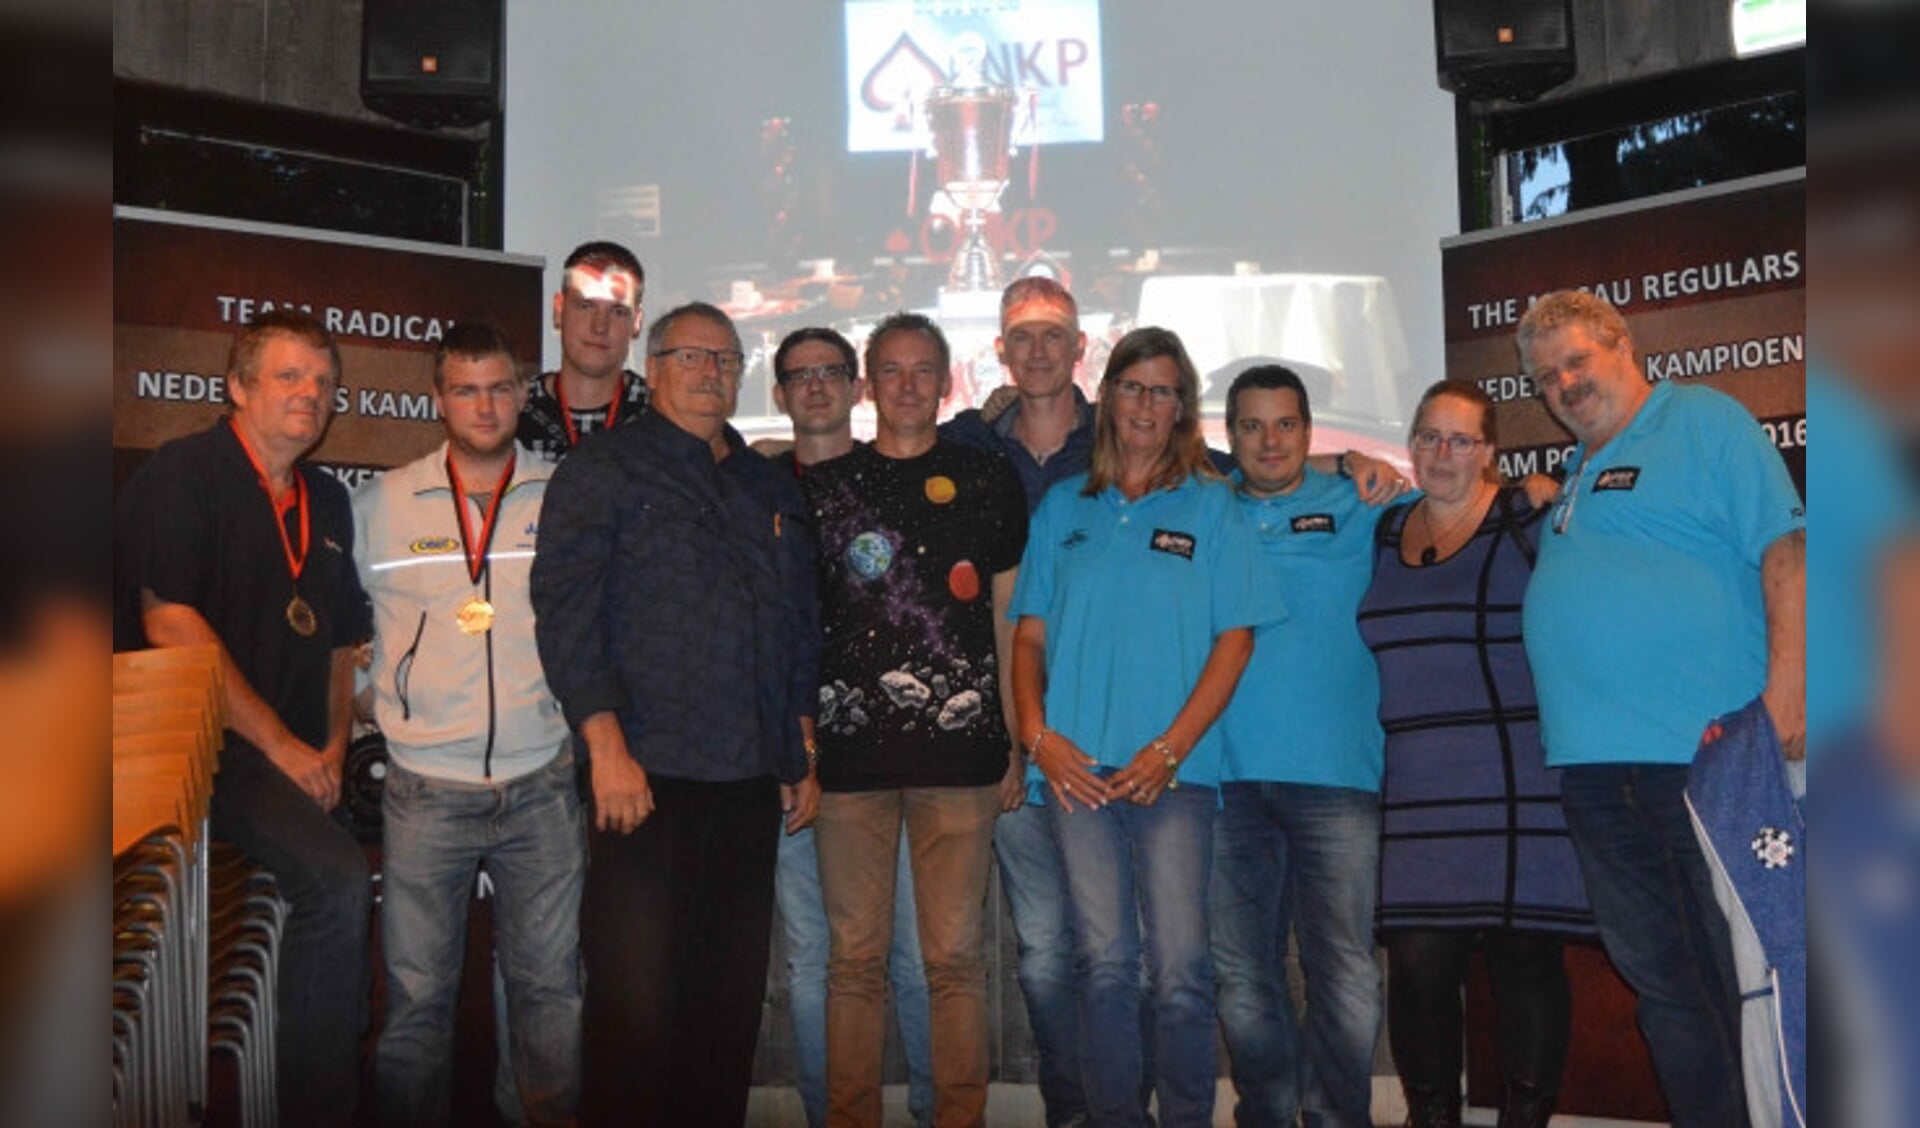  De winnaars van het toernooi in Dronten.